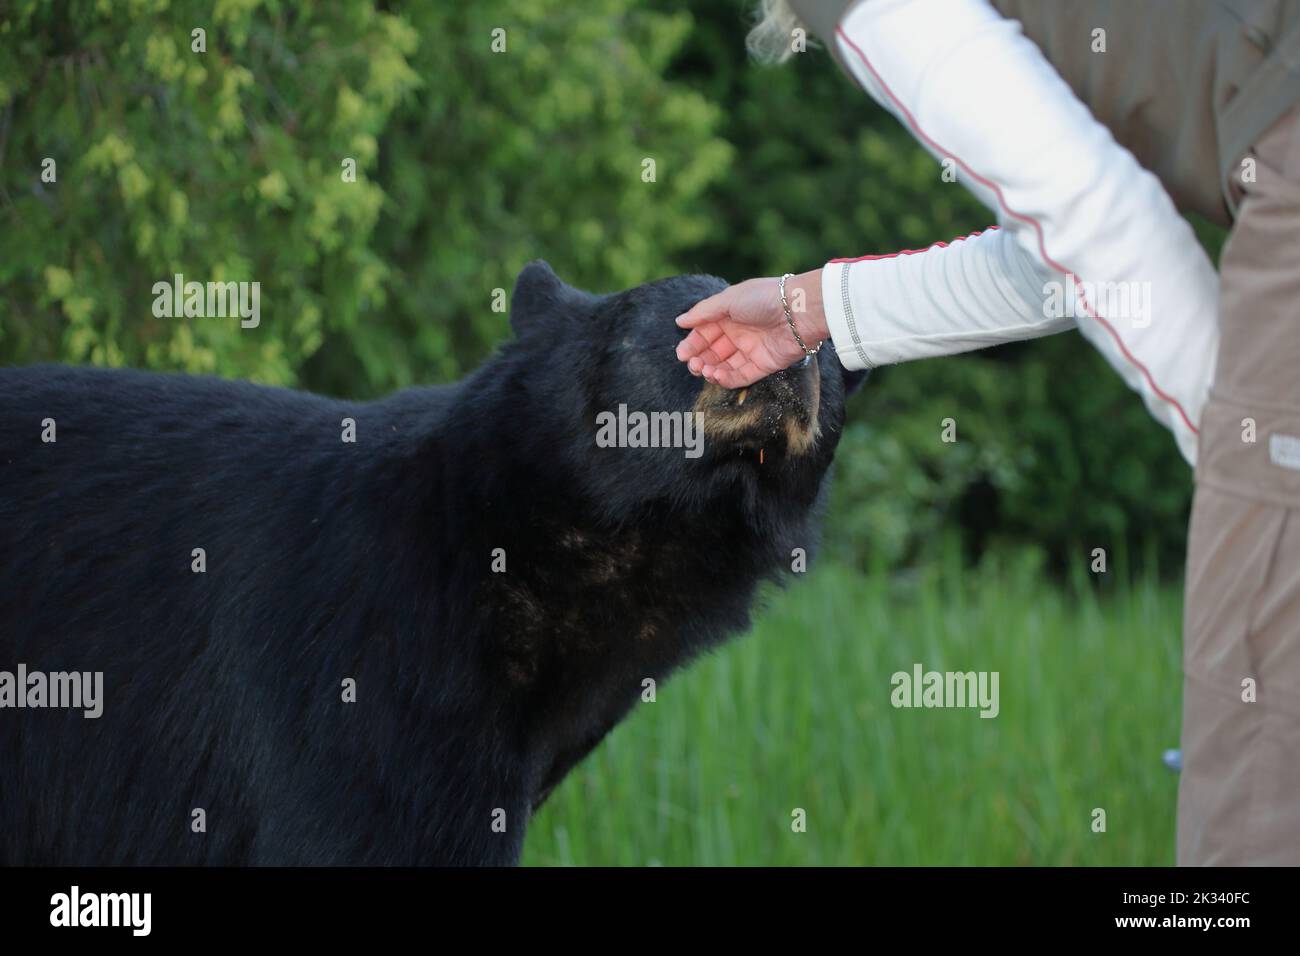 Berührung eines Schwarzbären in der kanadischer Wildnis / Touching a Black bear in Canadian wilderness / Ursus americanus Stock Photo